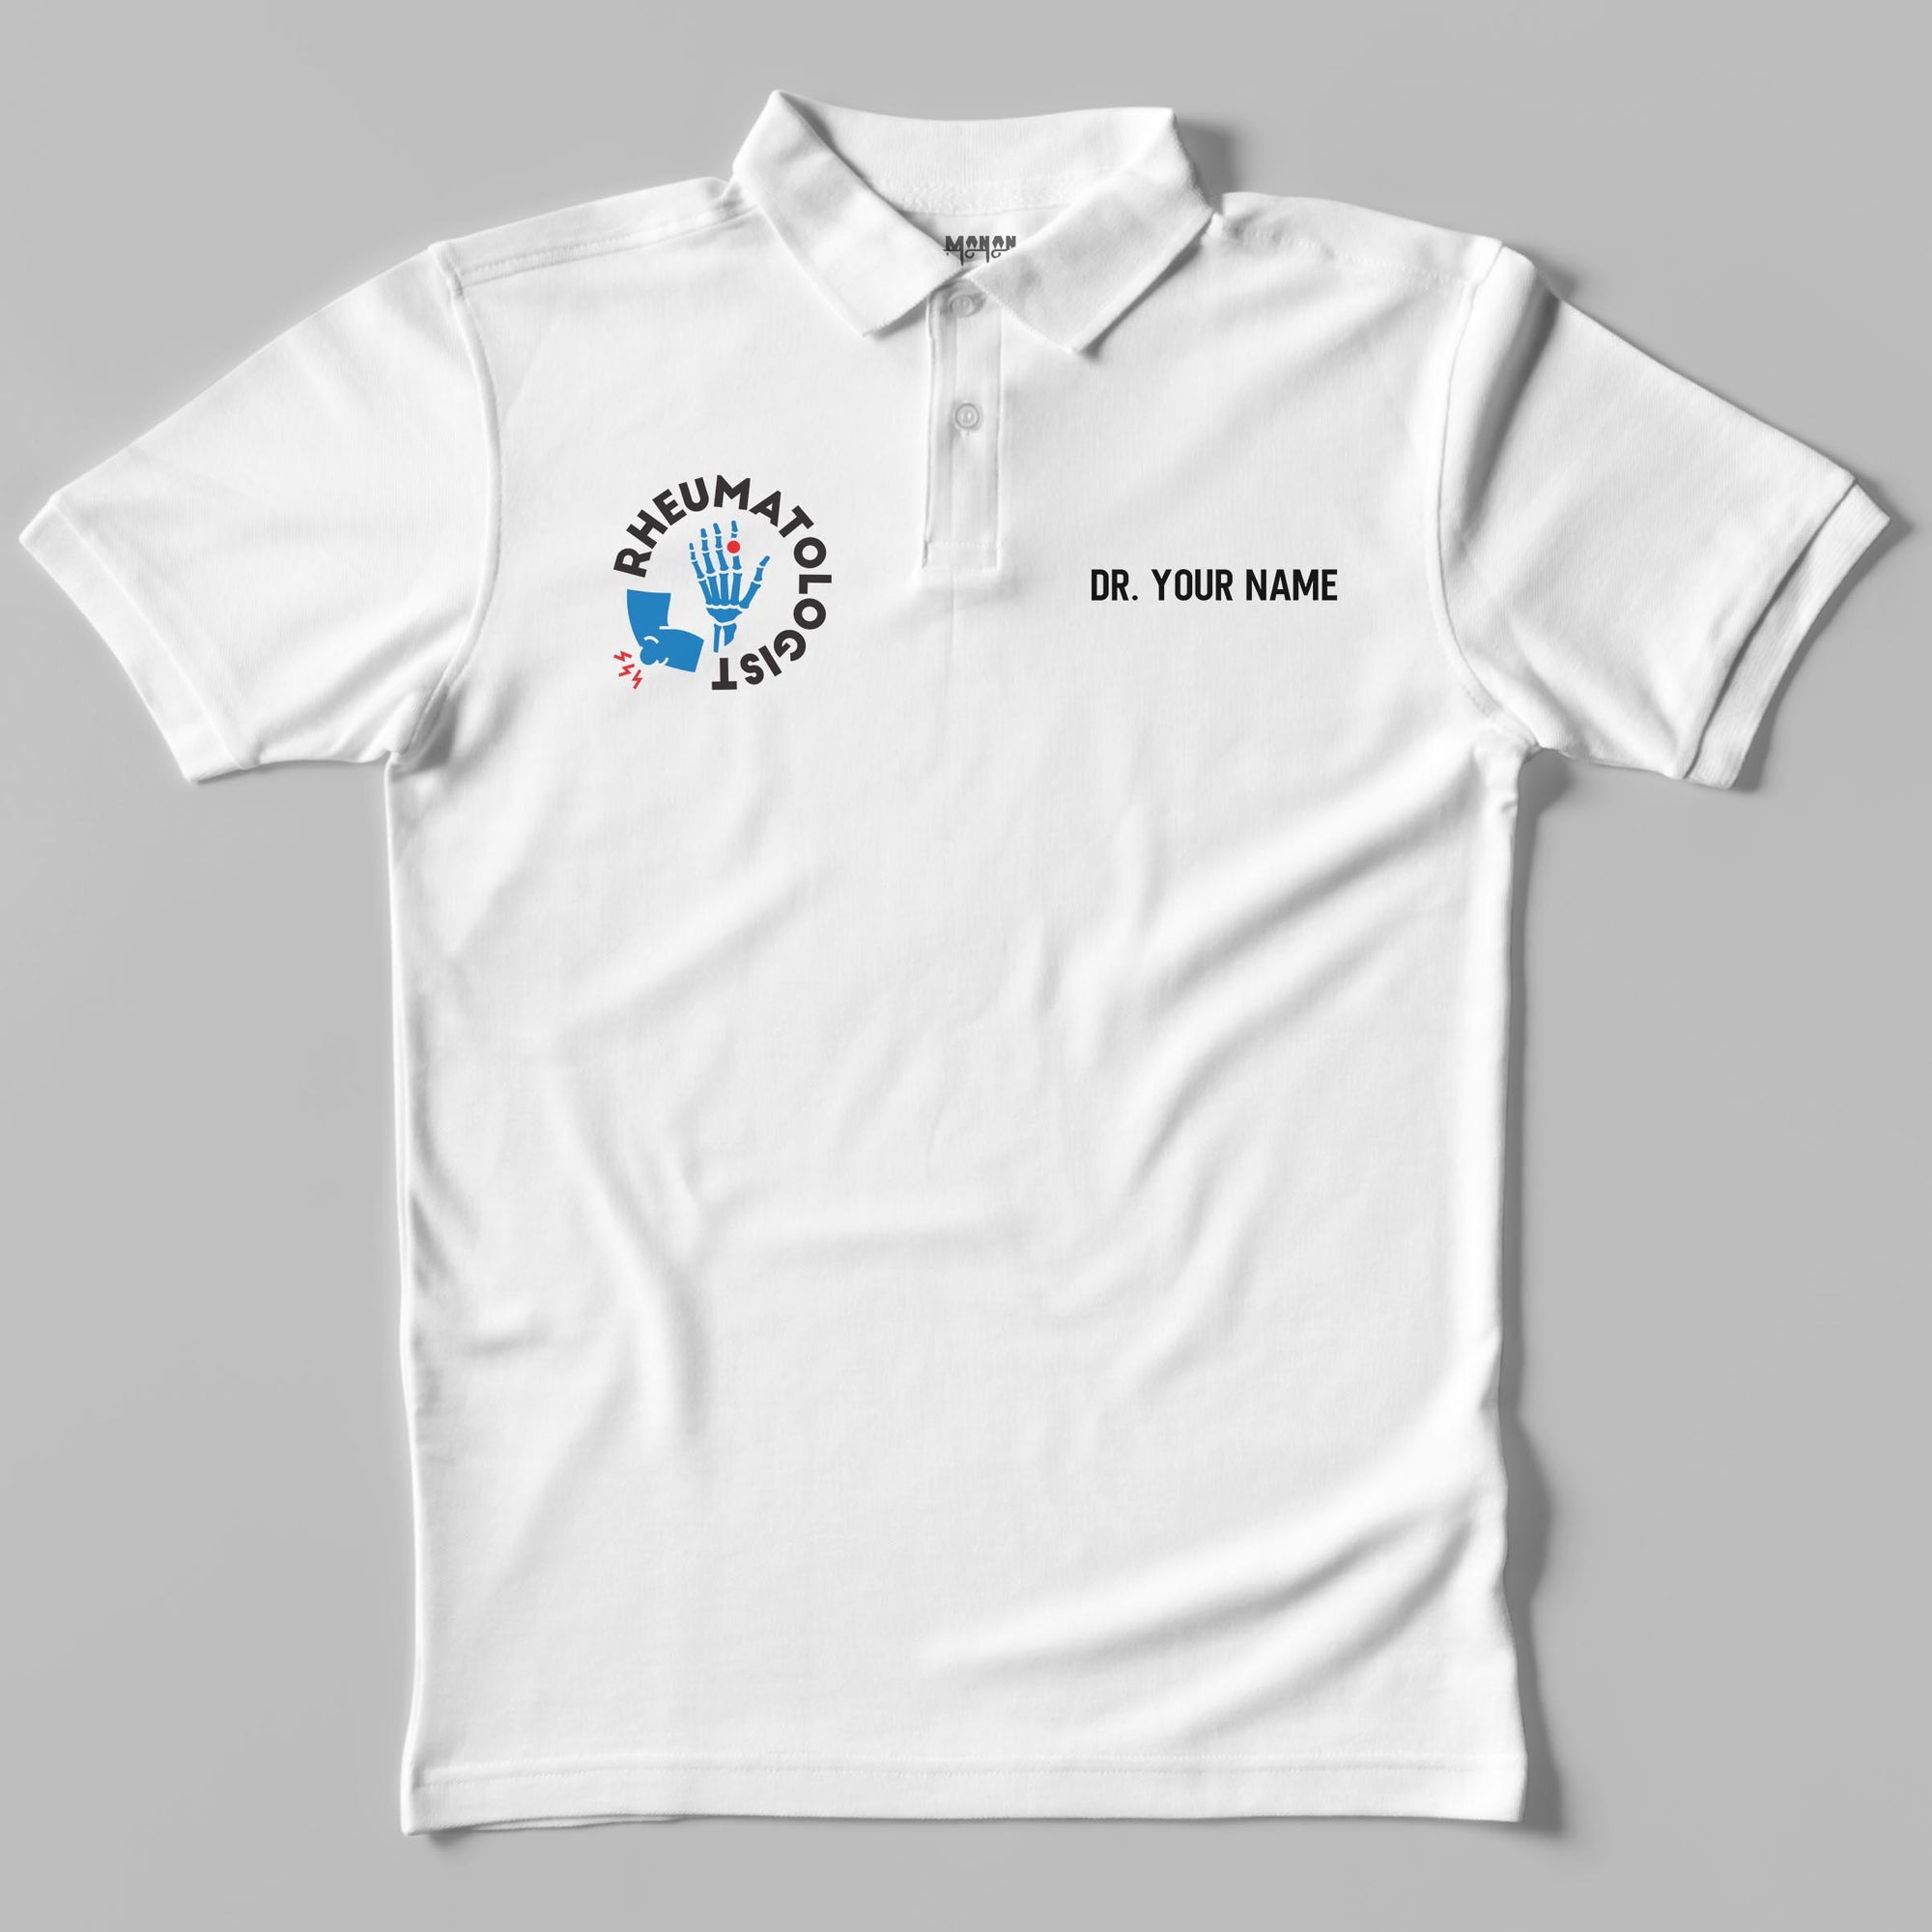 Definition Of Rheumatologist - Unisex Polo T-shirt